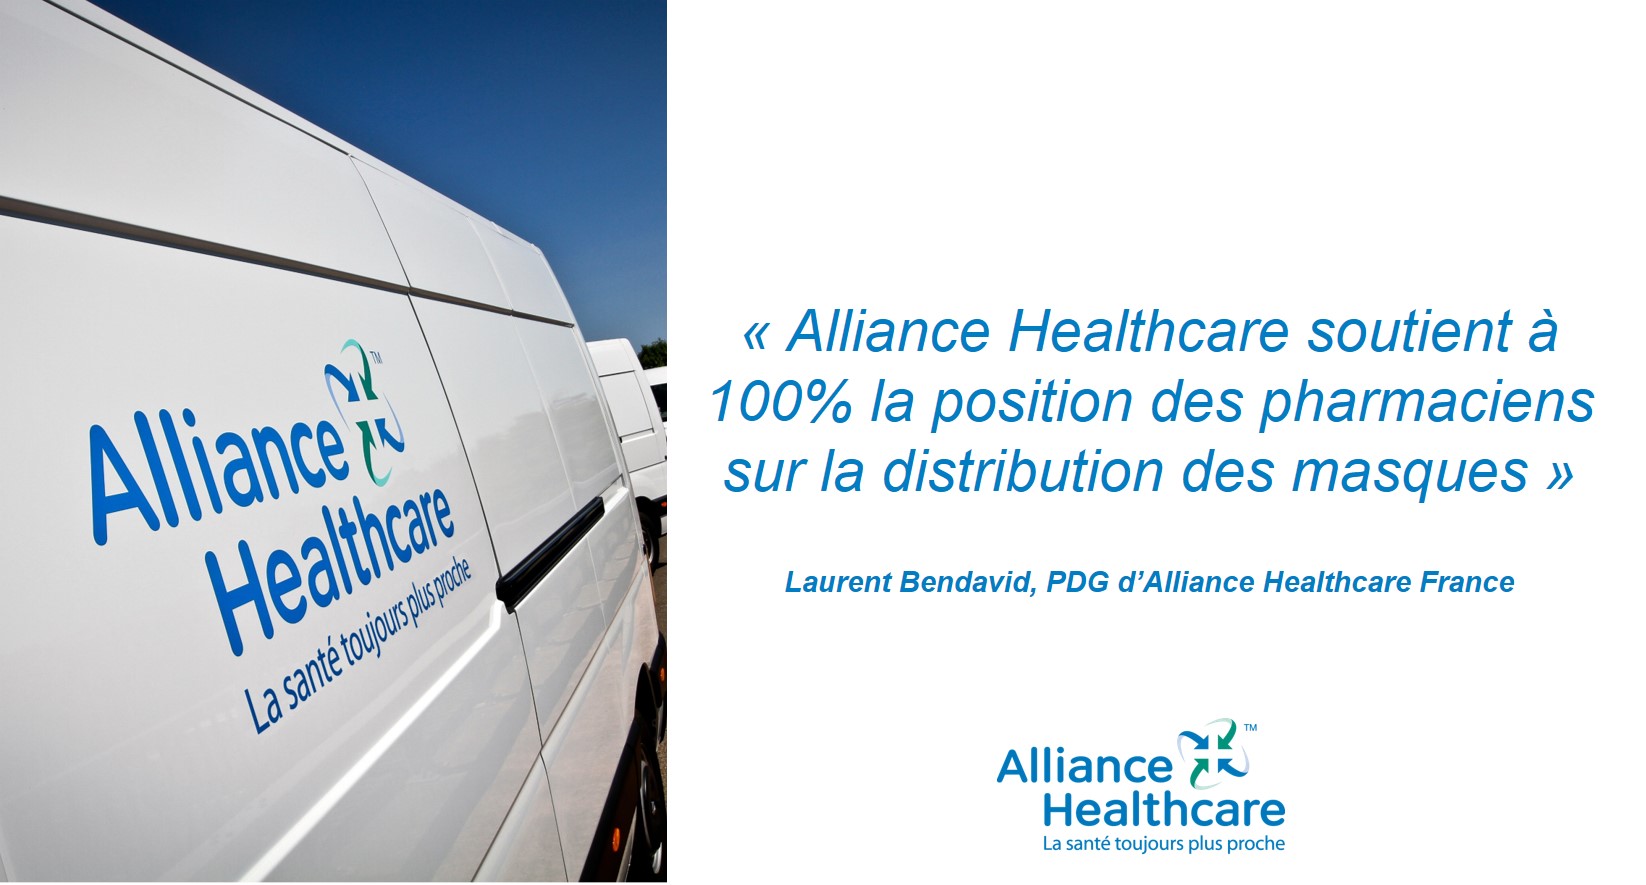 alliance healthcare soutient